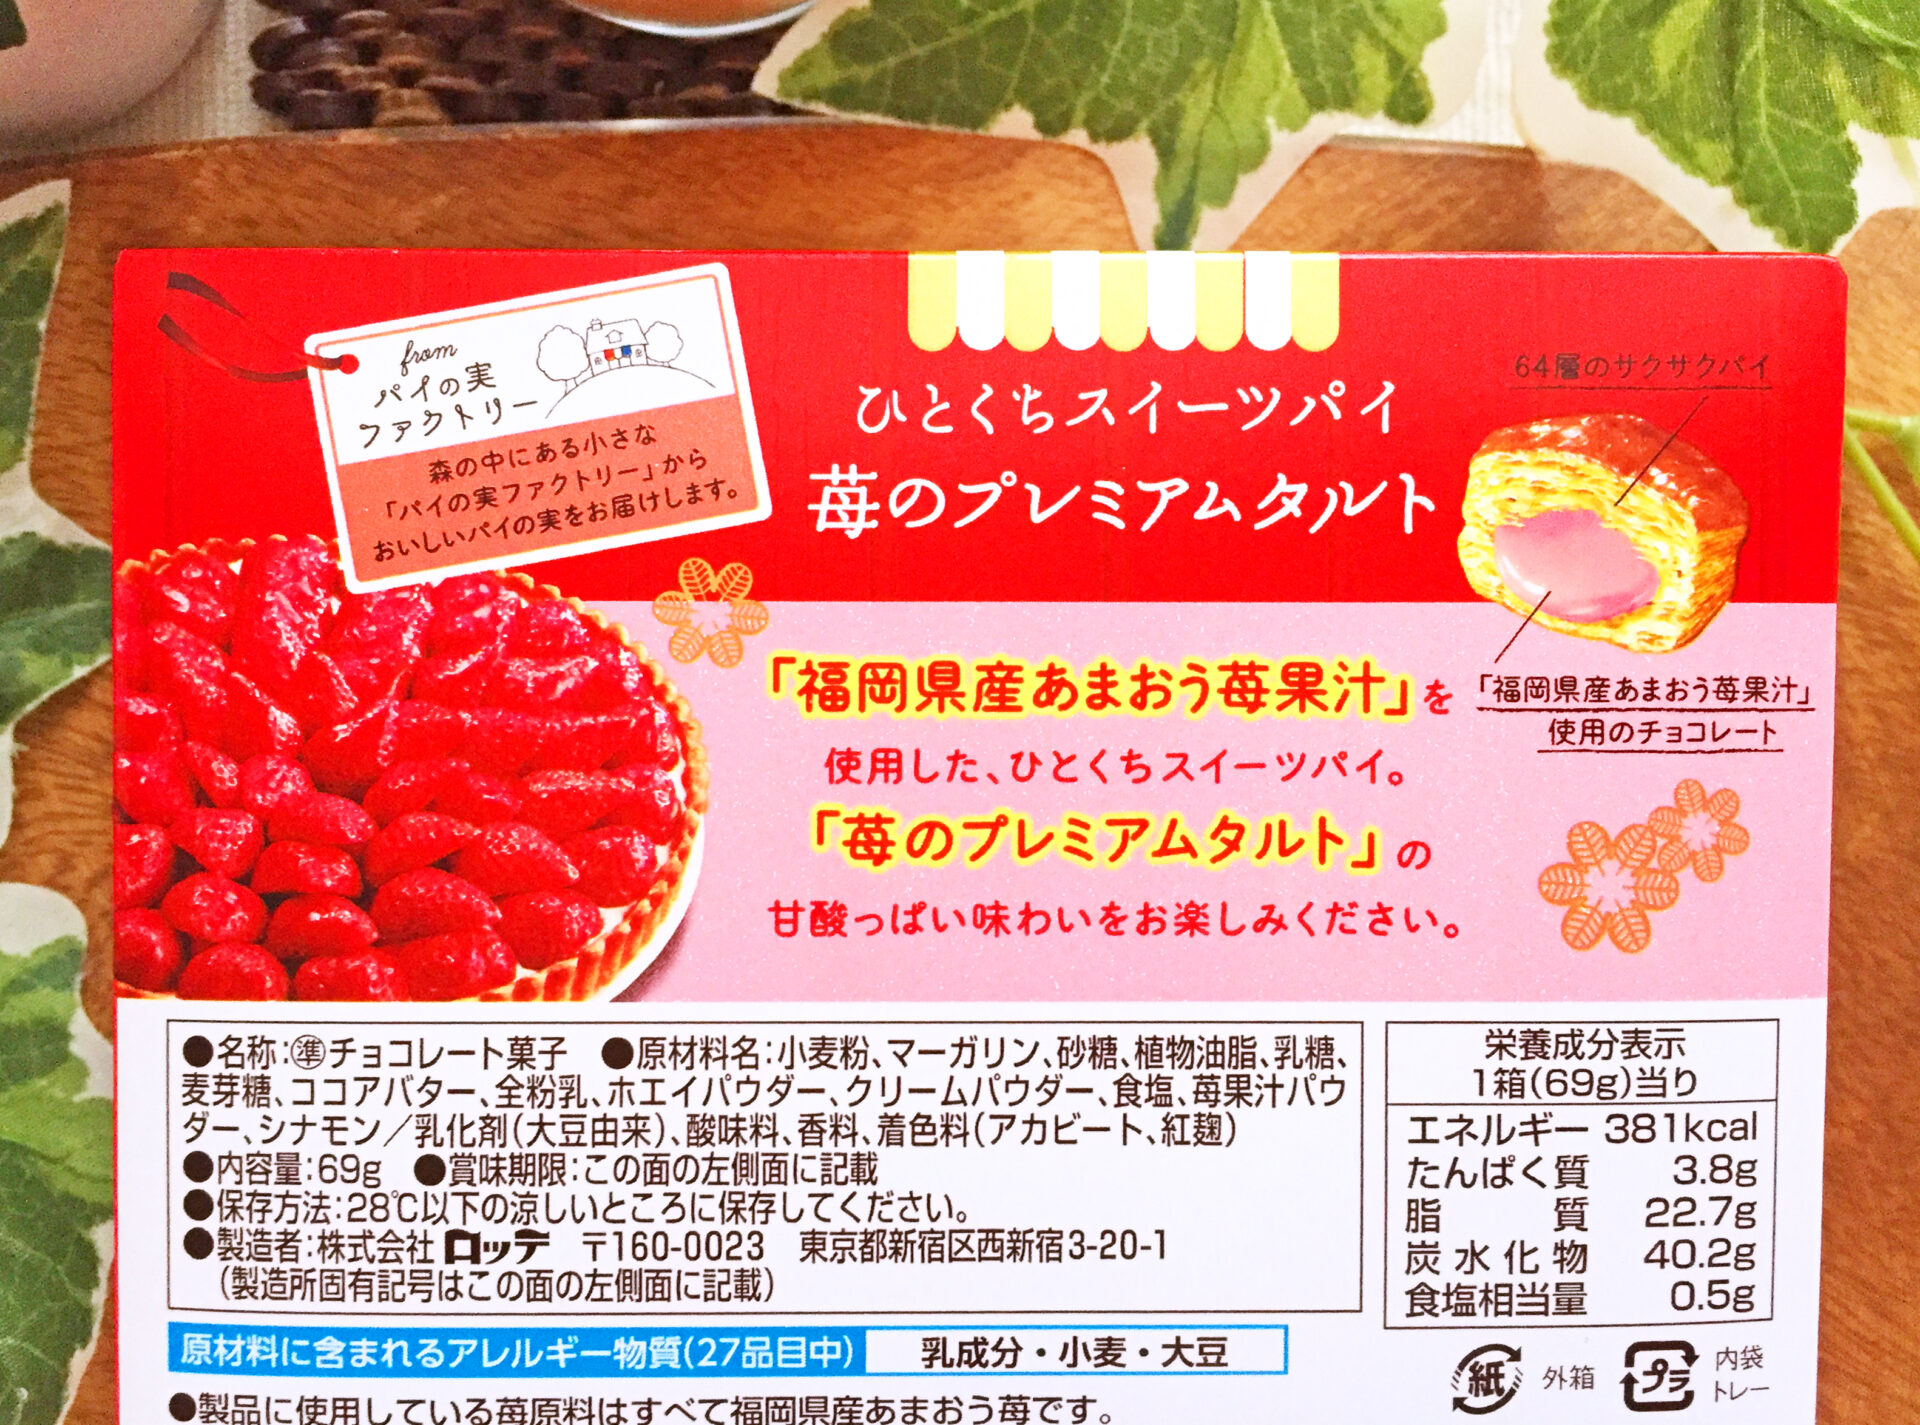 ロッテ パイの実 苺のプレミアムタルト は甘酸っぱいあまおう苺と隠し味のシナモンの風味が抜群な贅沢系準チョコレート菓子 えんぎ株式会社 Engi Inc